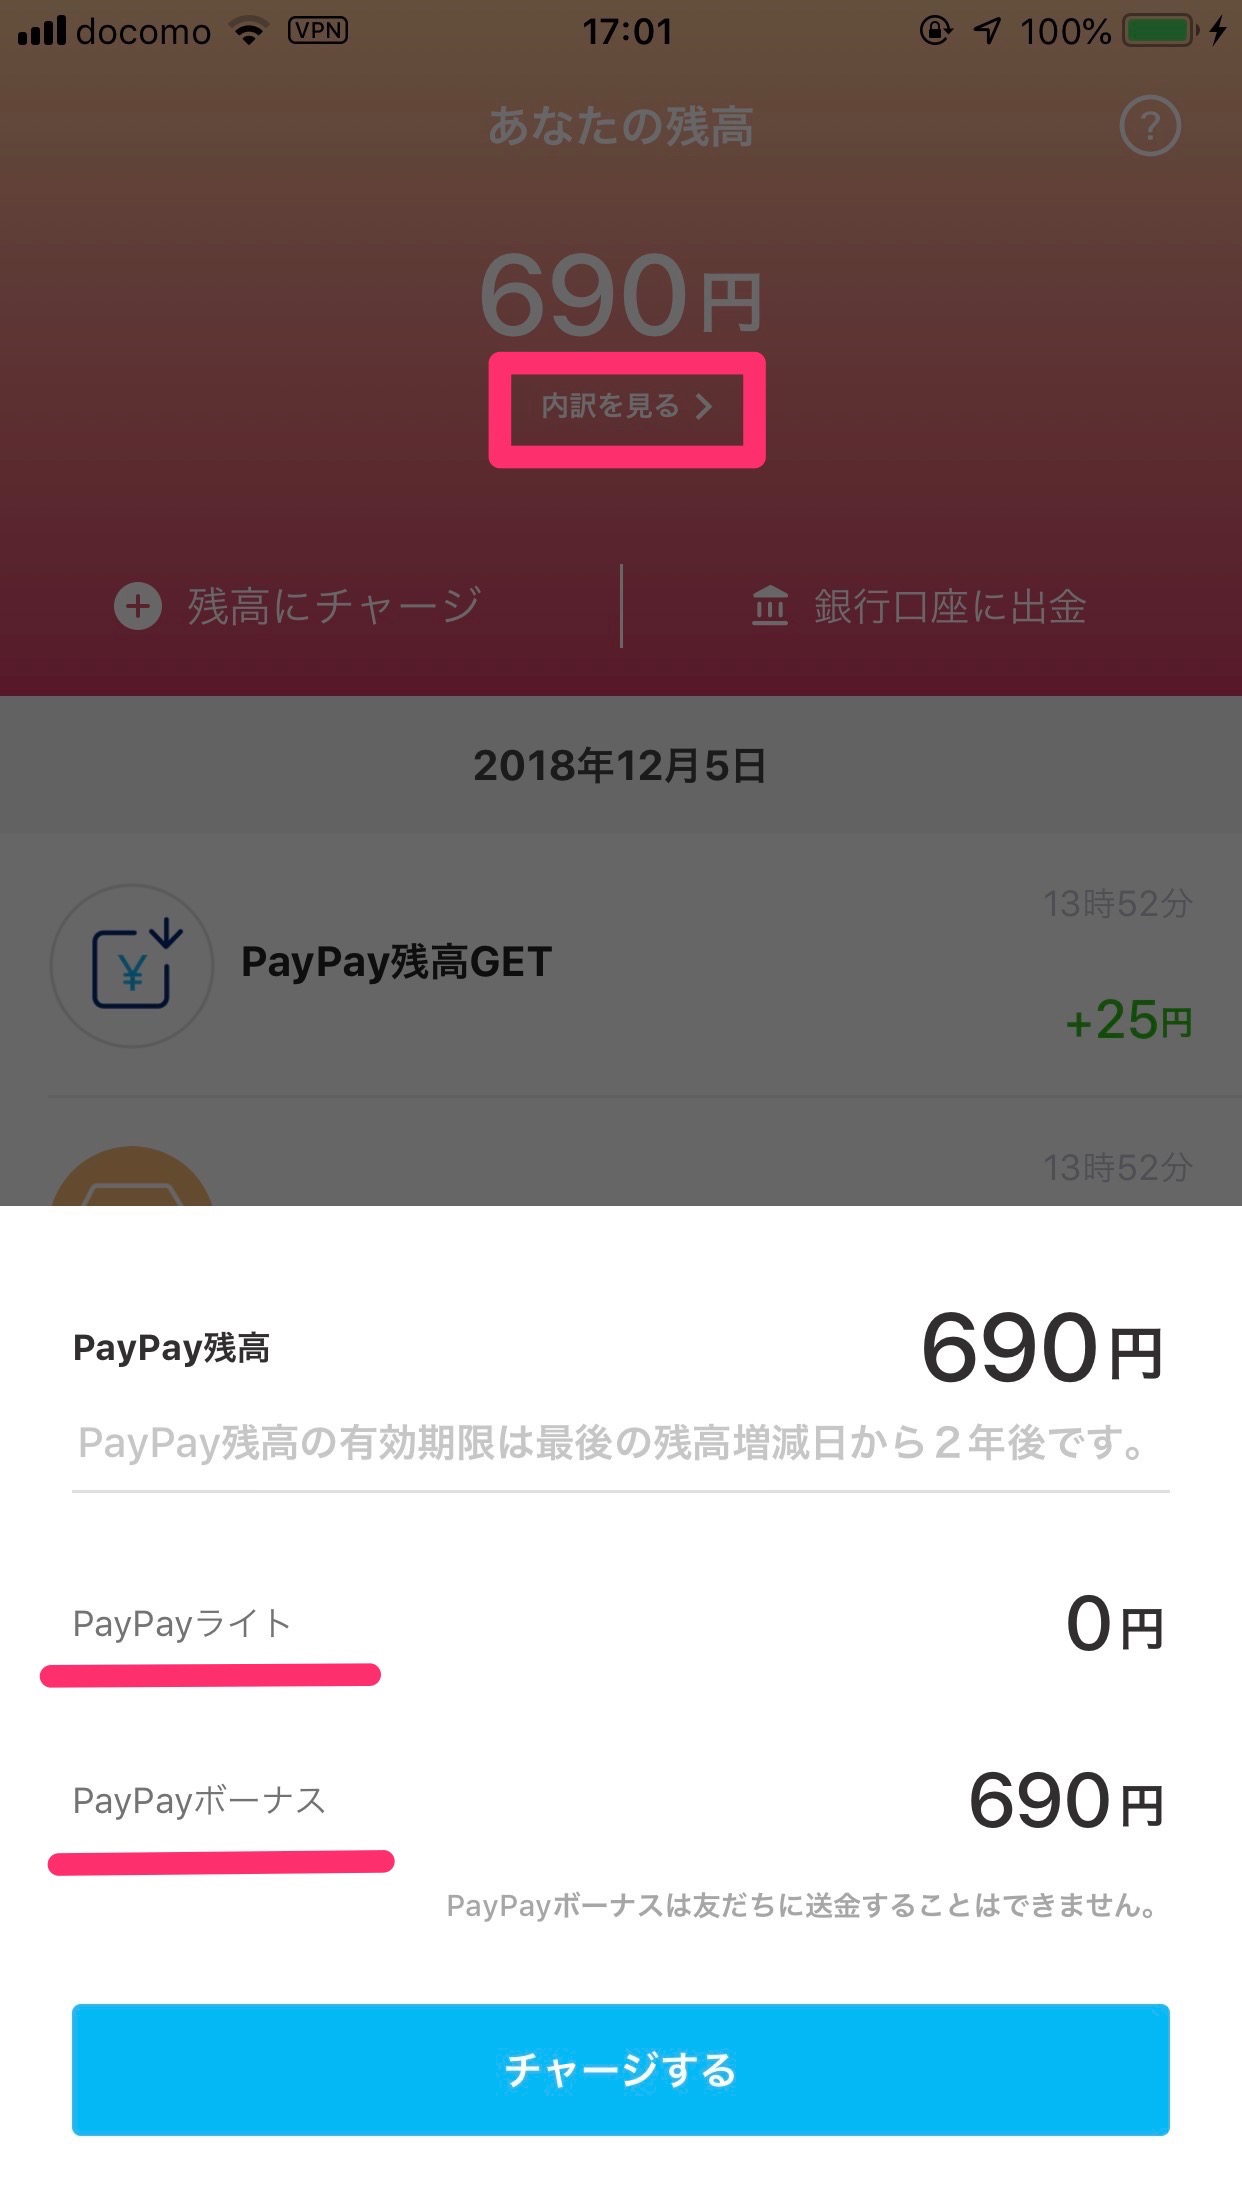 【PayPay】100億円キャンペーンのペイペイ残高が戻ってきた 2